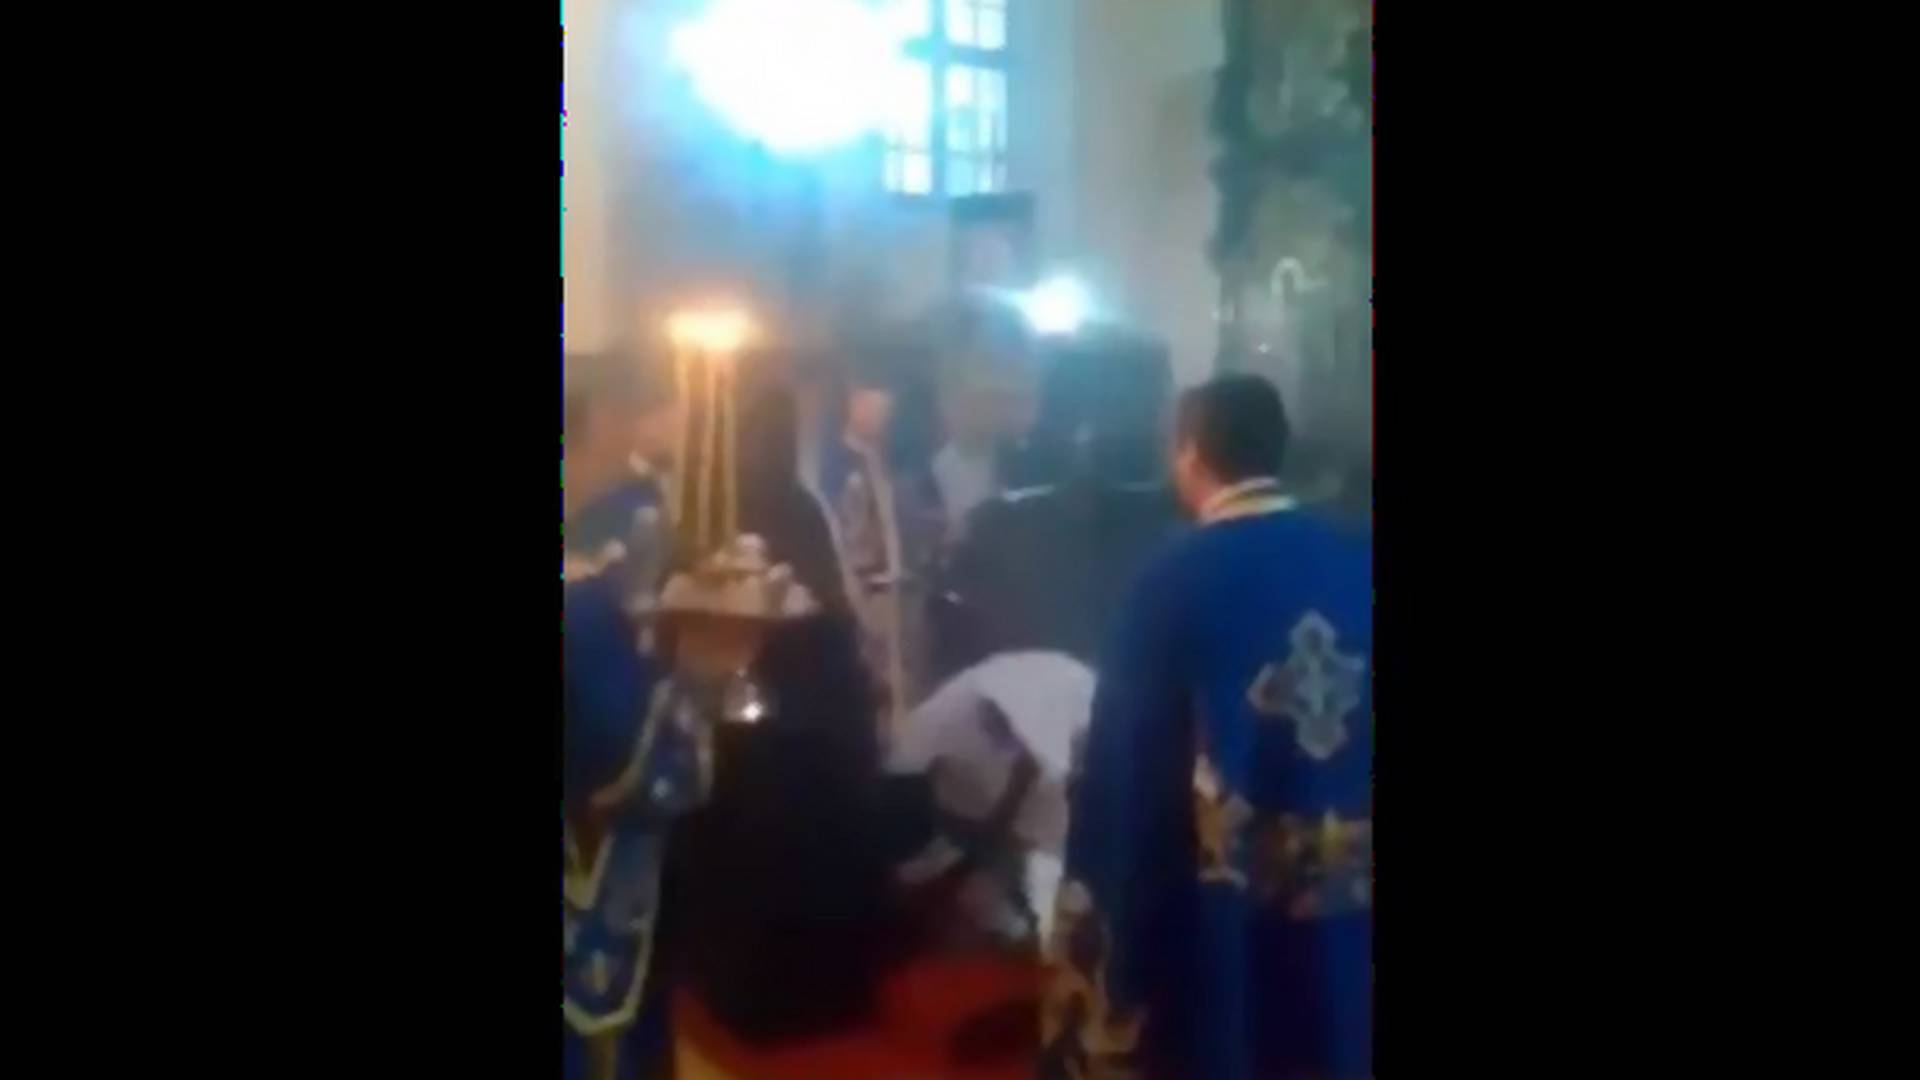 I sveštena lica imaju loše dane - Vladika iz Vojvodine tokom služenja liturgije naleteo na sto, pa ga deganžirao ka oltaru